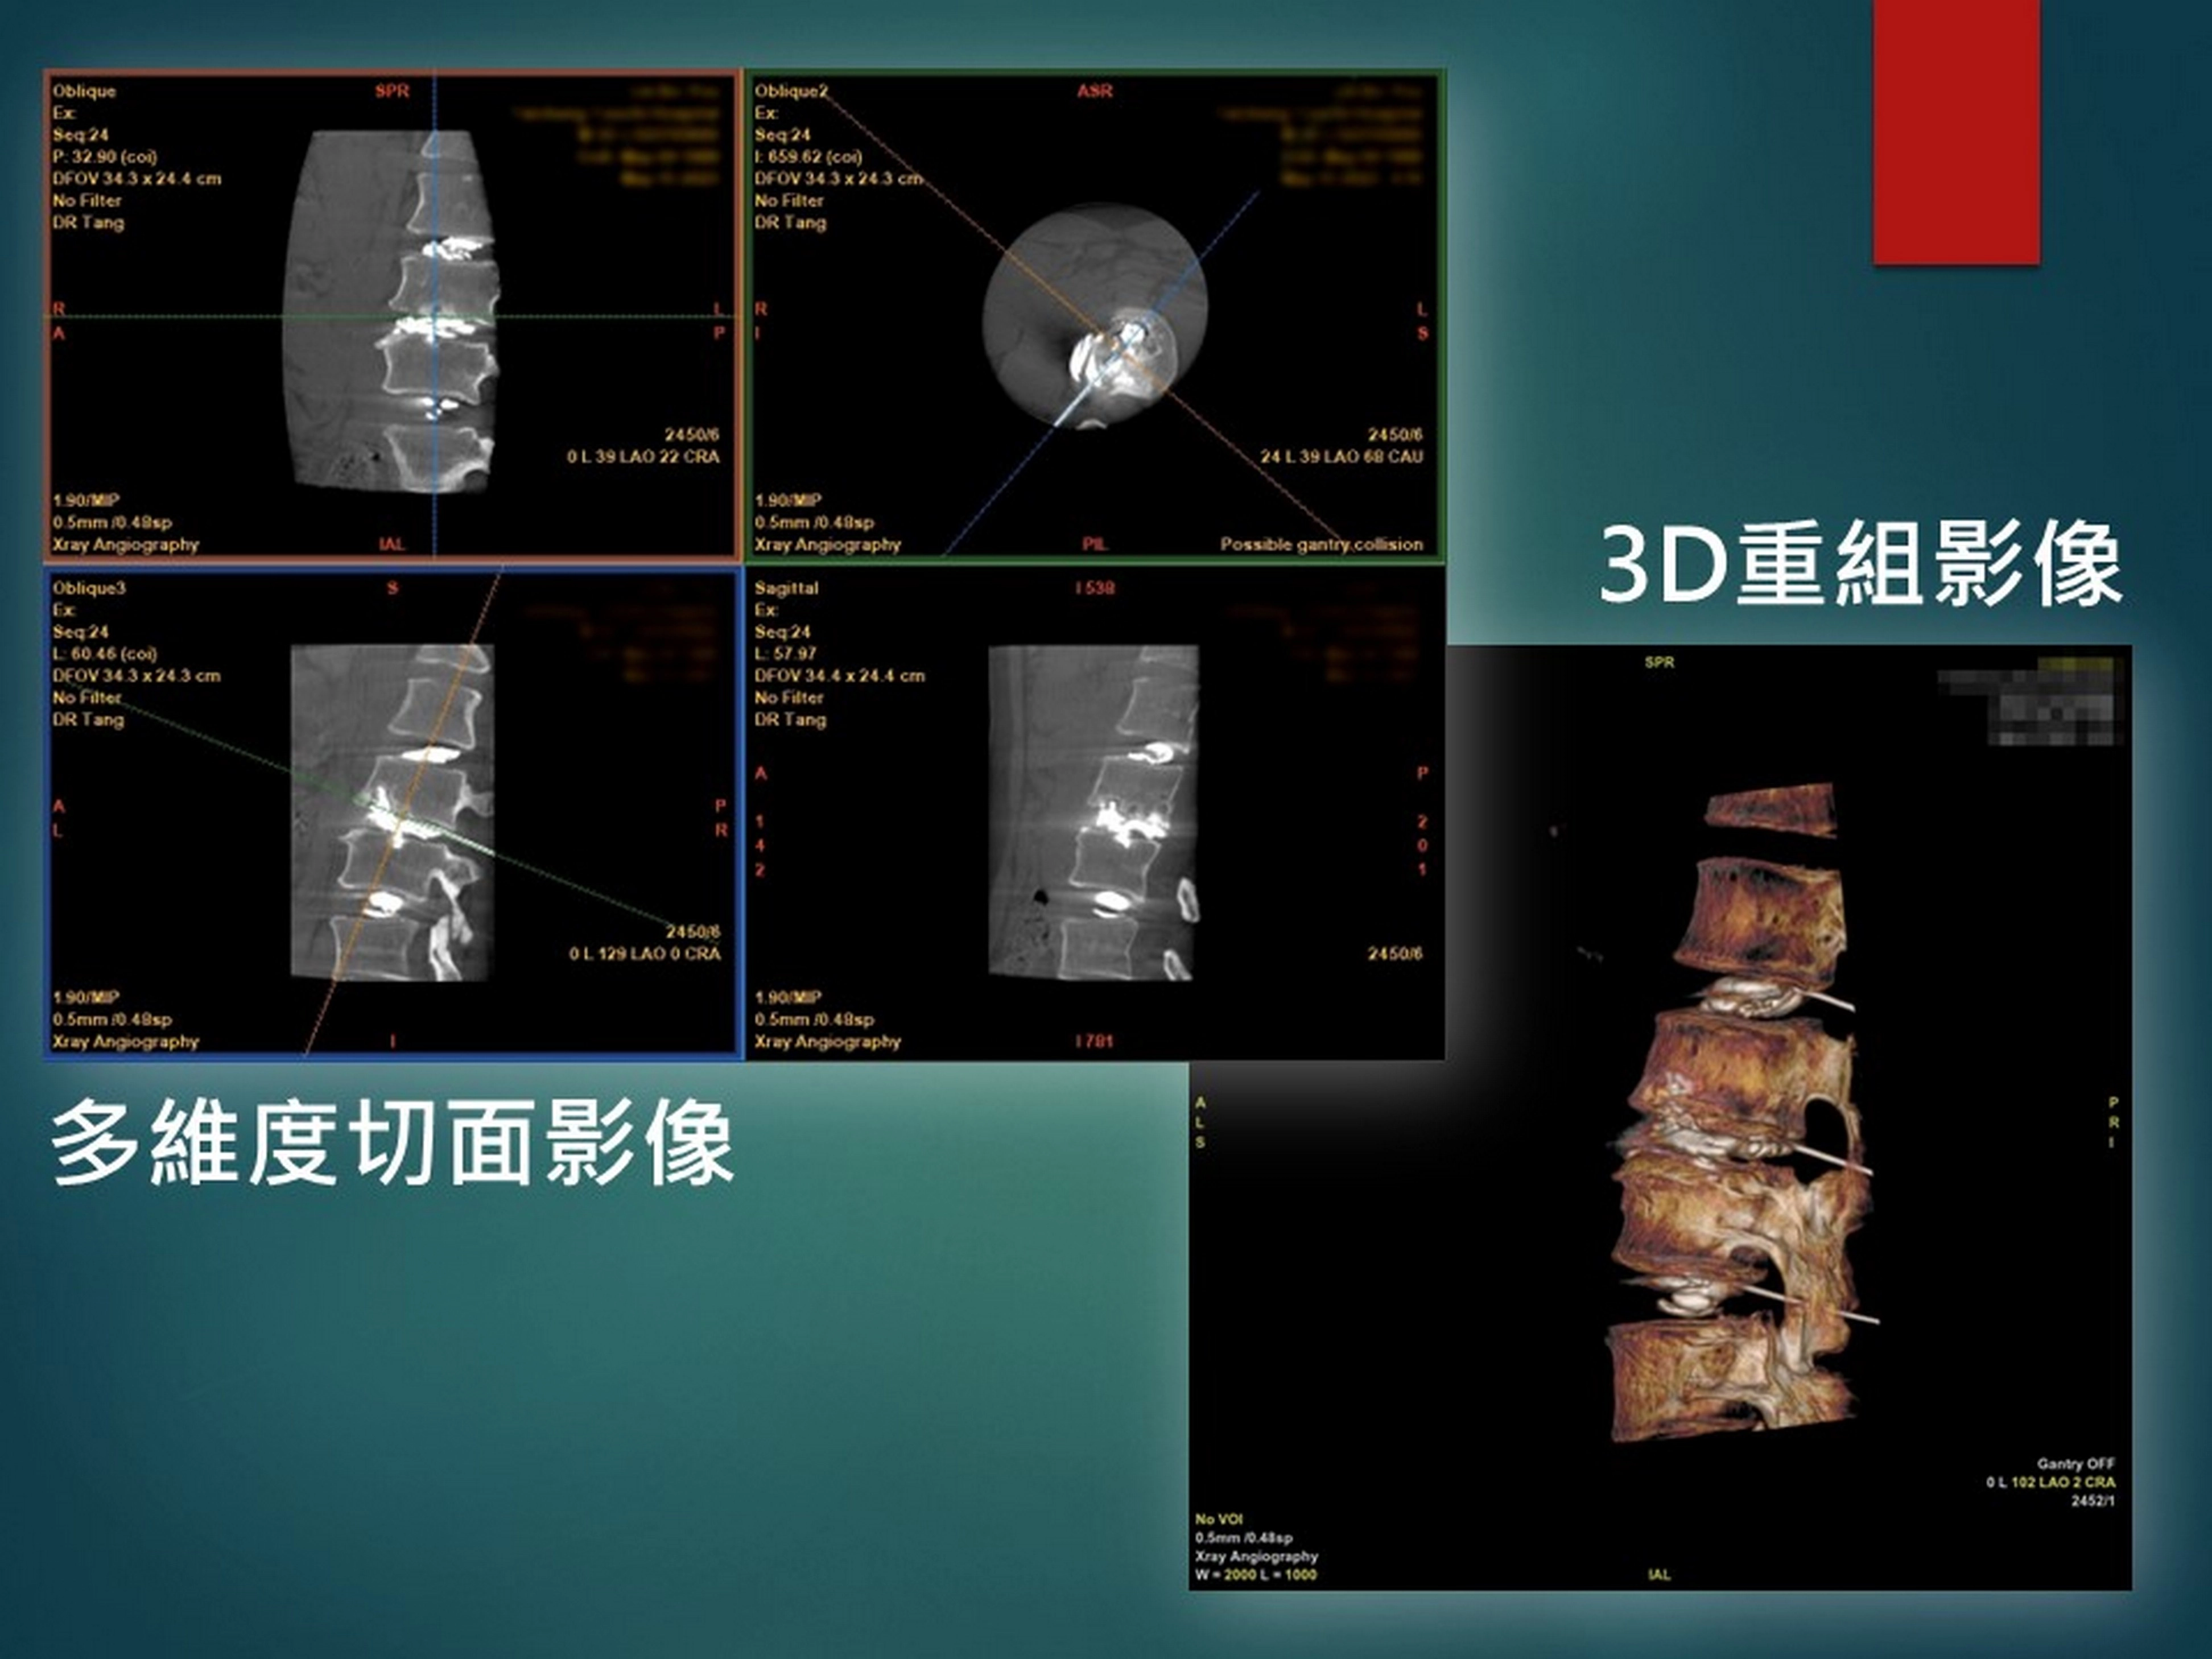 放射線多重影像導引設備可配合醫師需求，提供多維度切面影像以及3D重組影像精準導引治療位置。